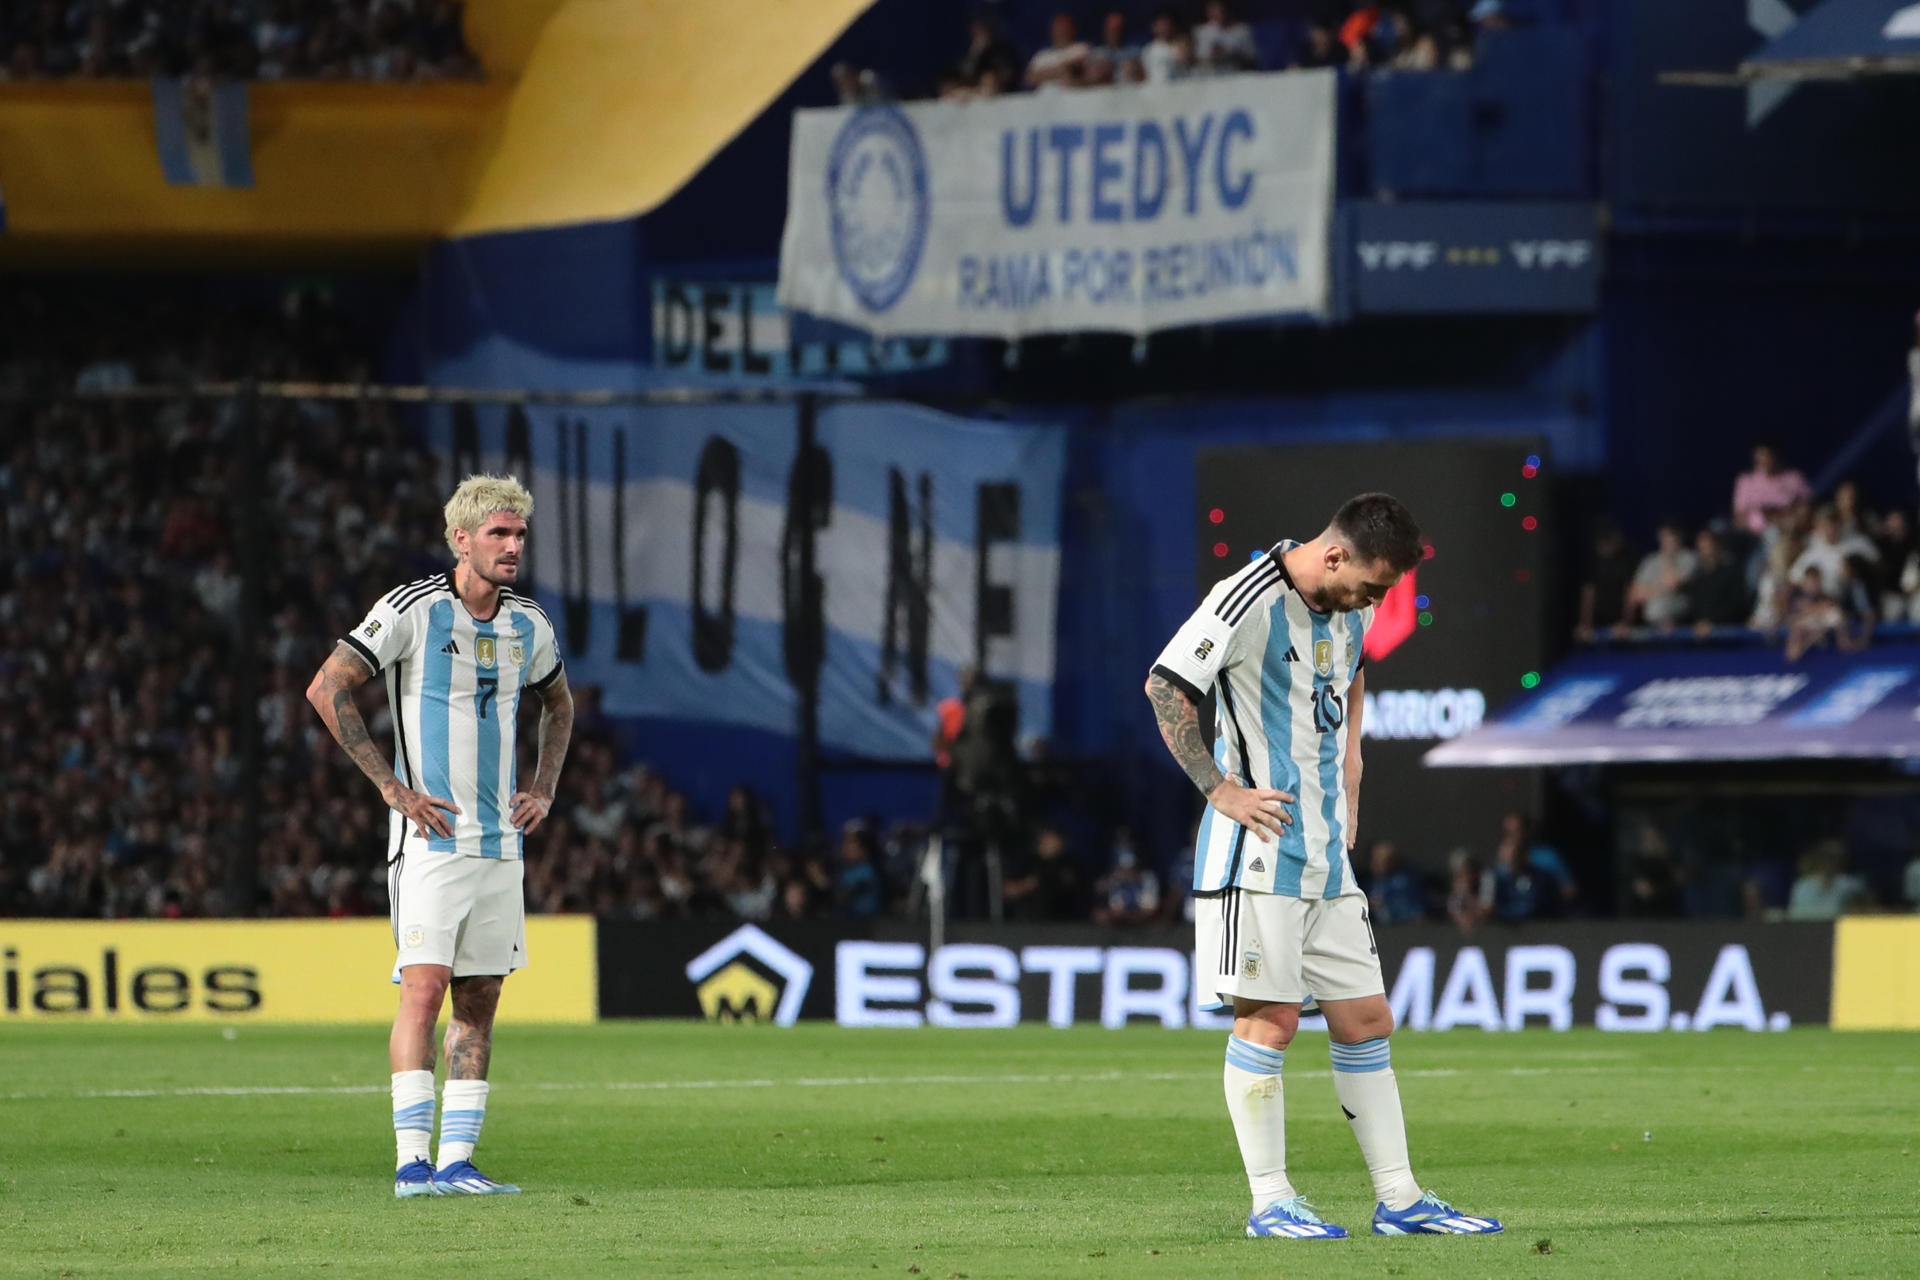 A lesão muscular de Messi pode complicar sua presença na seleção argentina